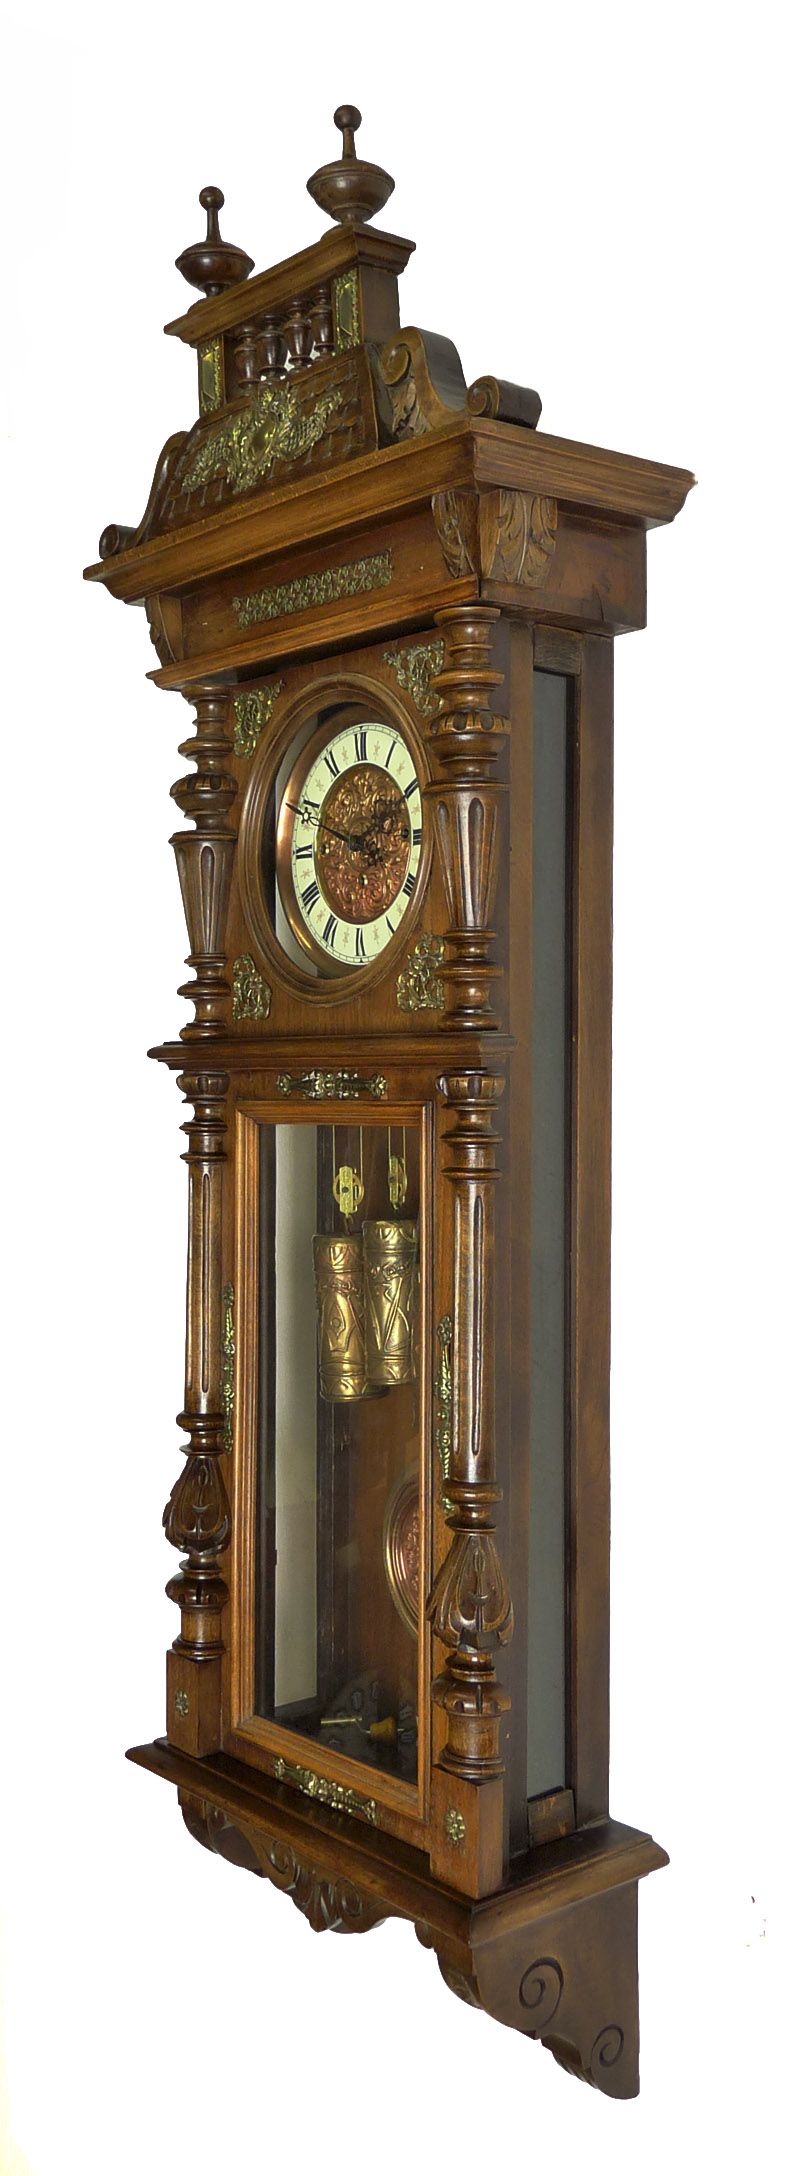 Beautiful Antique Gustav Becker 3 Weight Wall Clock at 1880 1900 Grand 